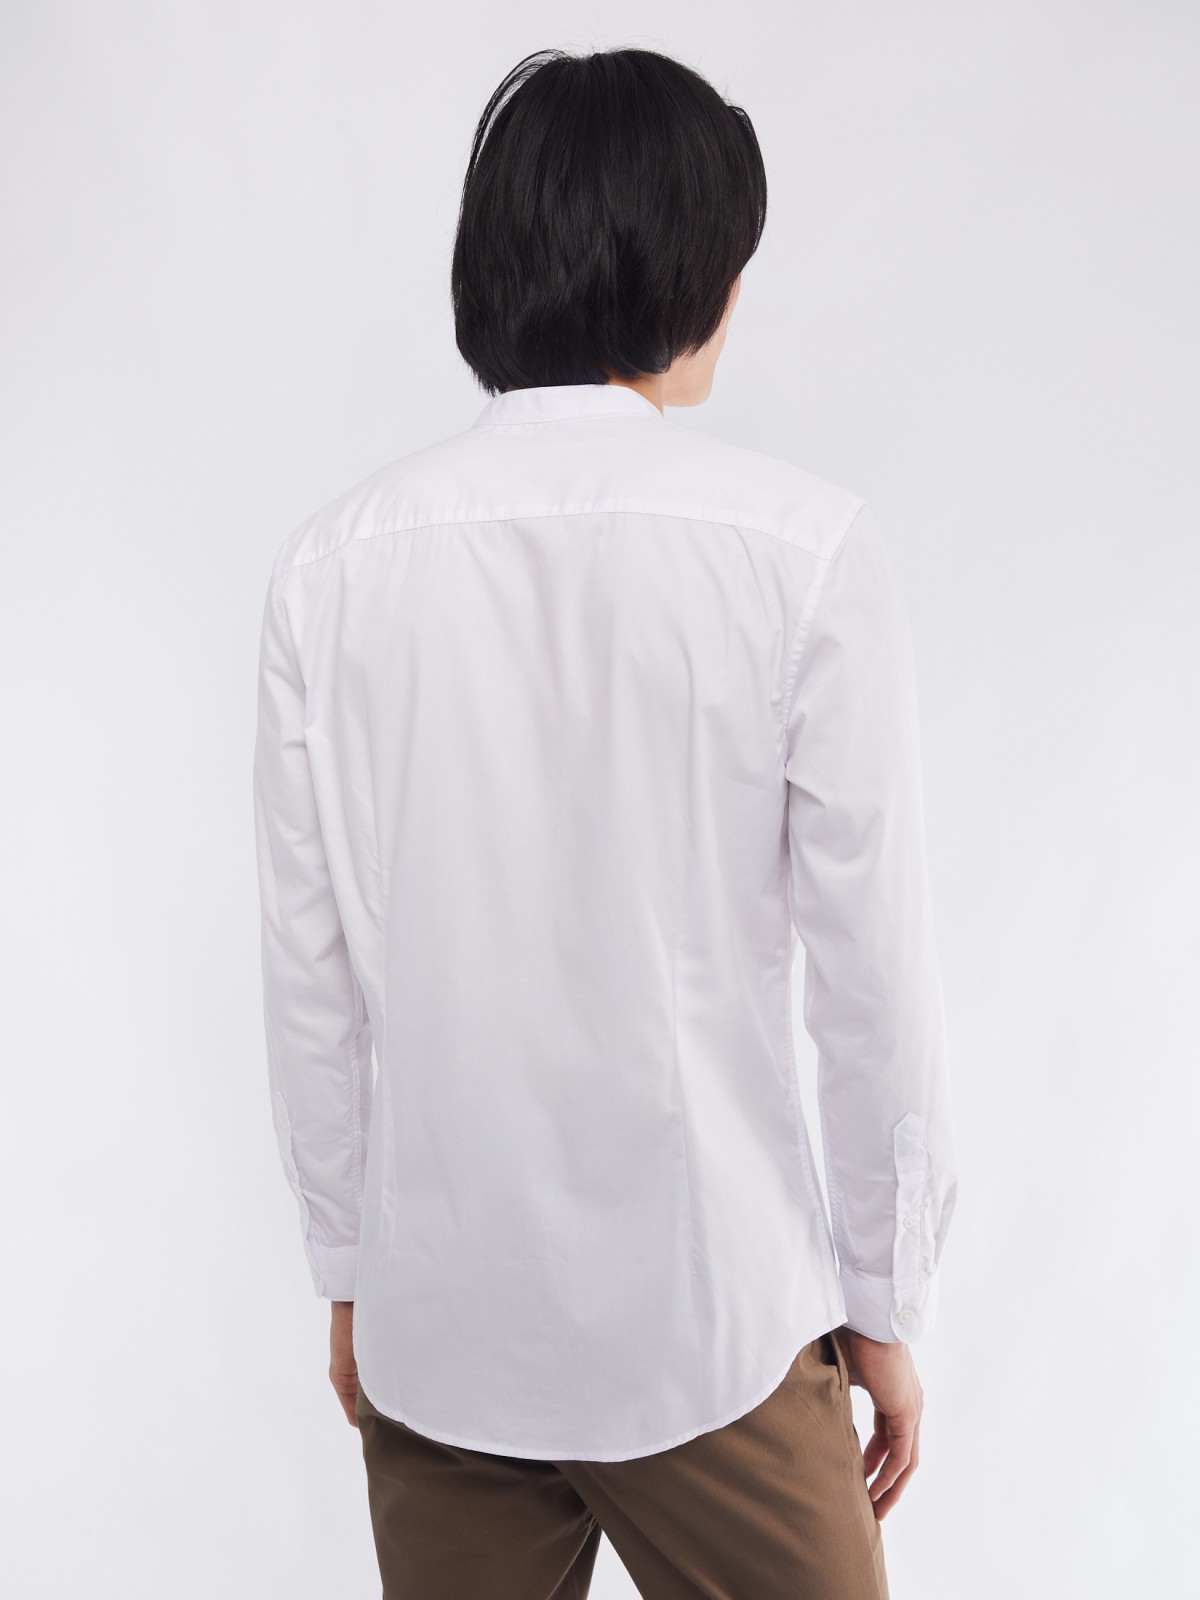 Офисная рубашка с воротником-стойкой и длинным рукавом zolla 01411217W072, цвет белый, размер M - фото 6